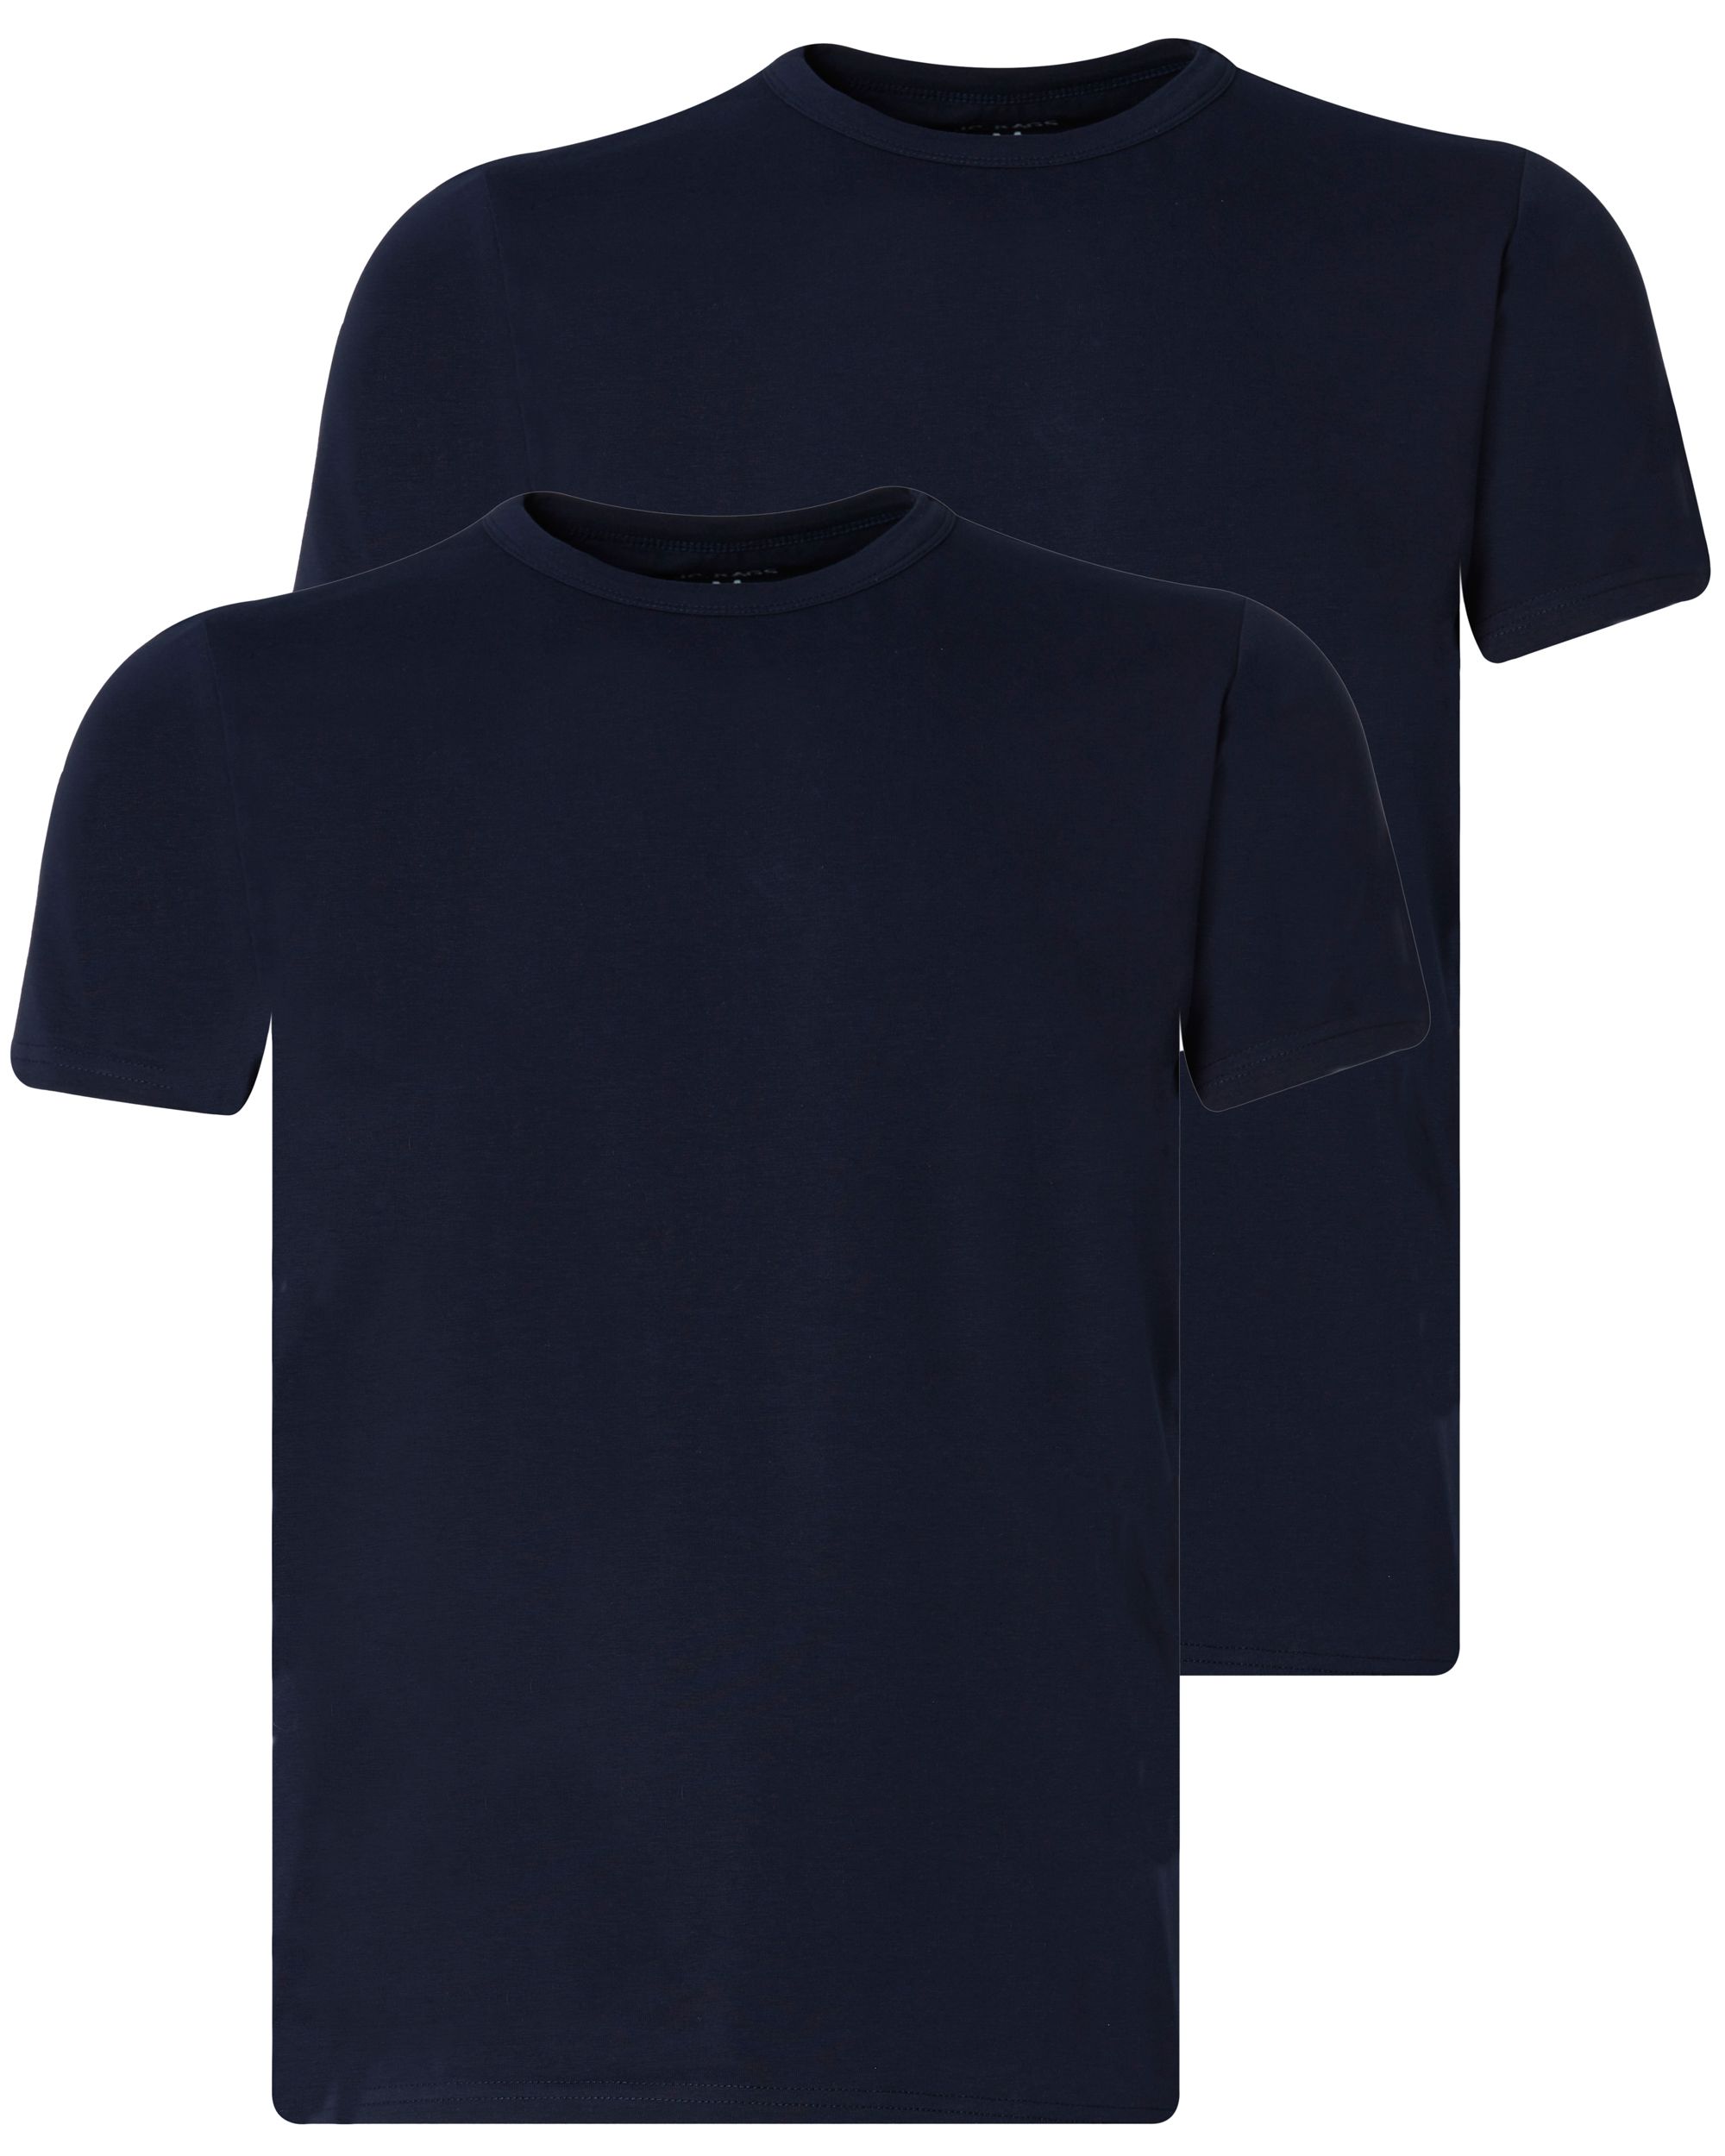 J.C. RAGS Basic T-shirt KM 2-pack NAVY 081603-003-L